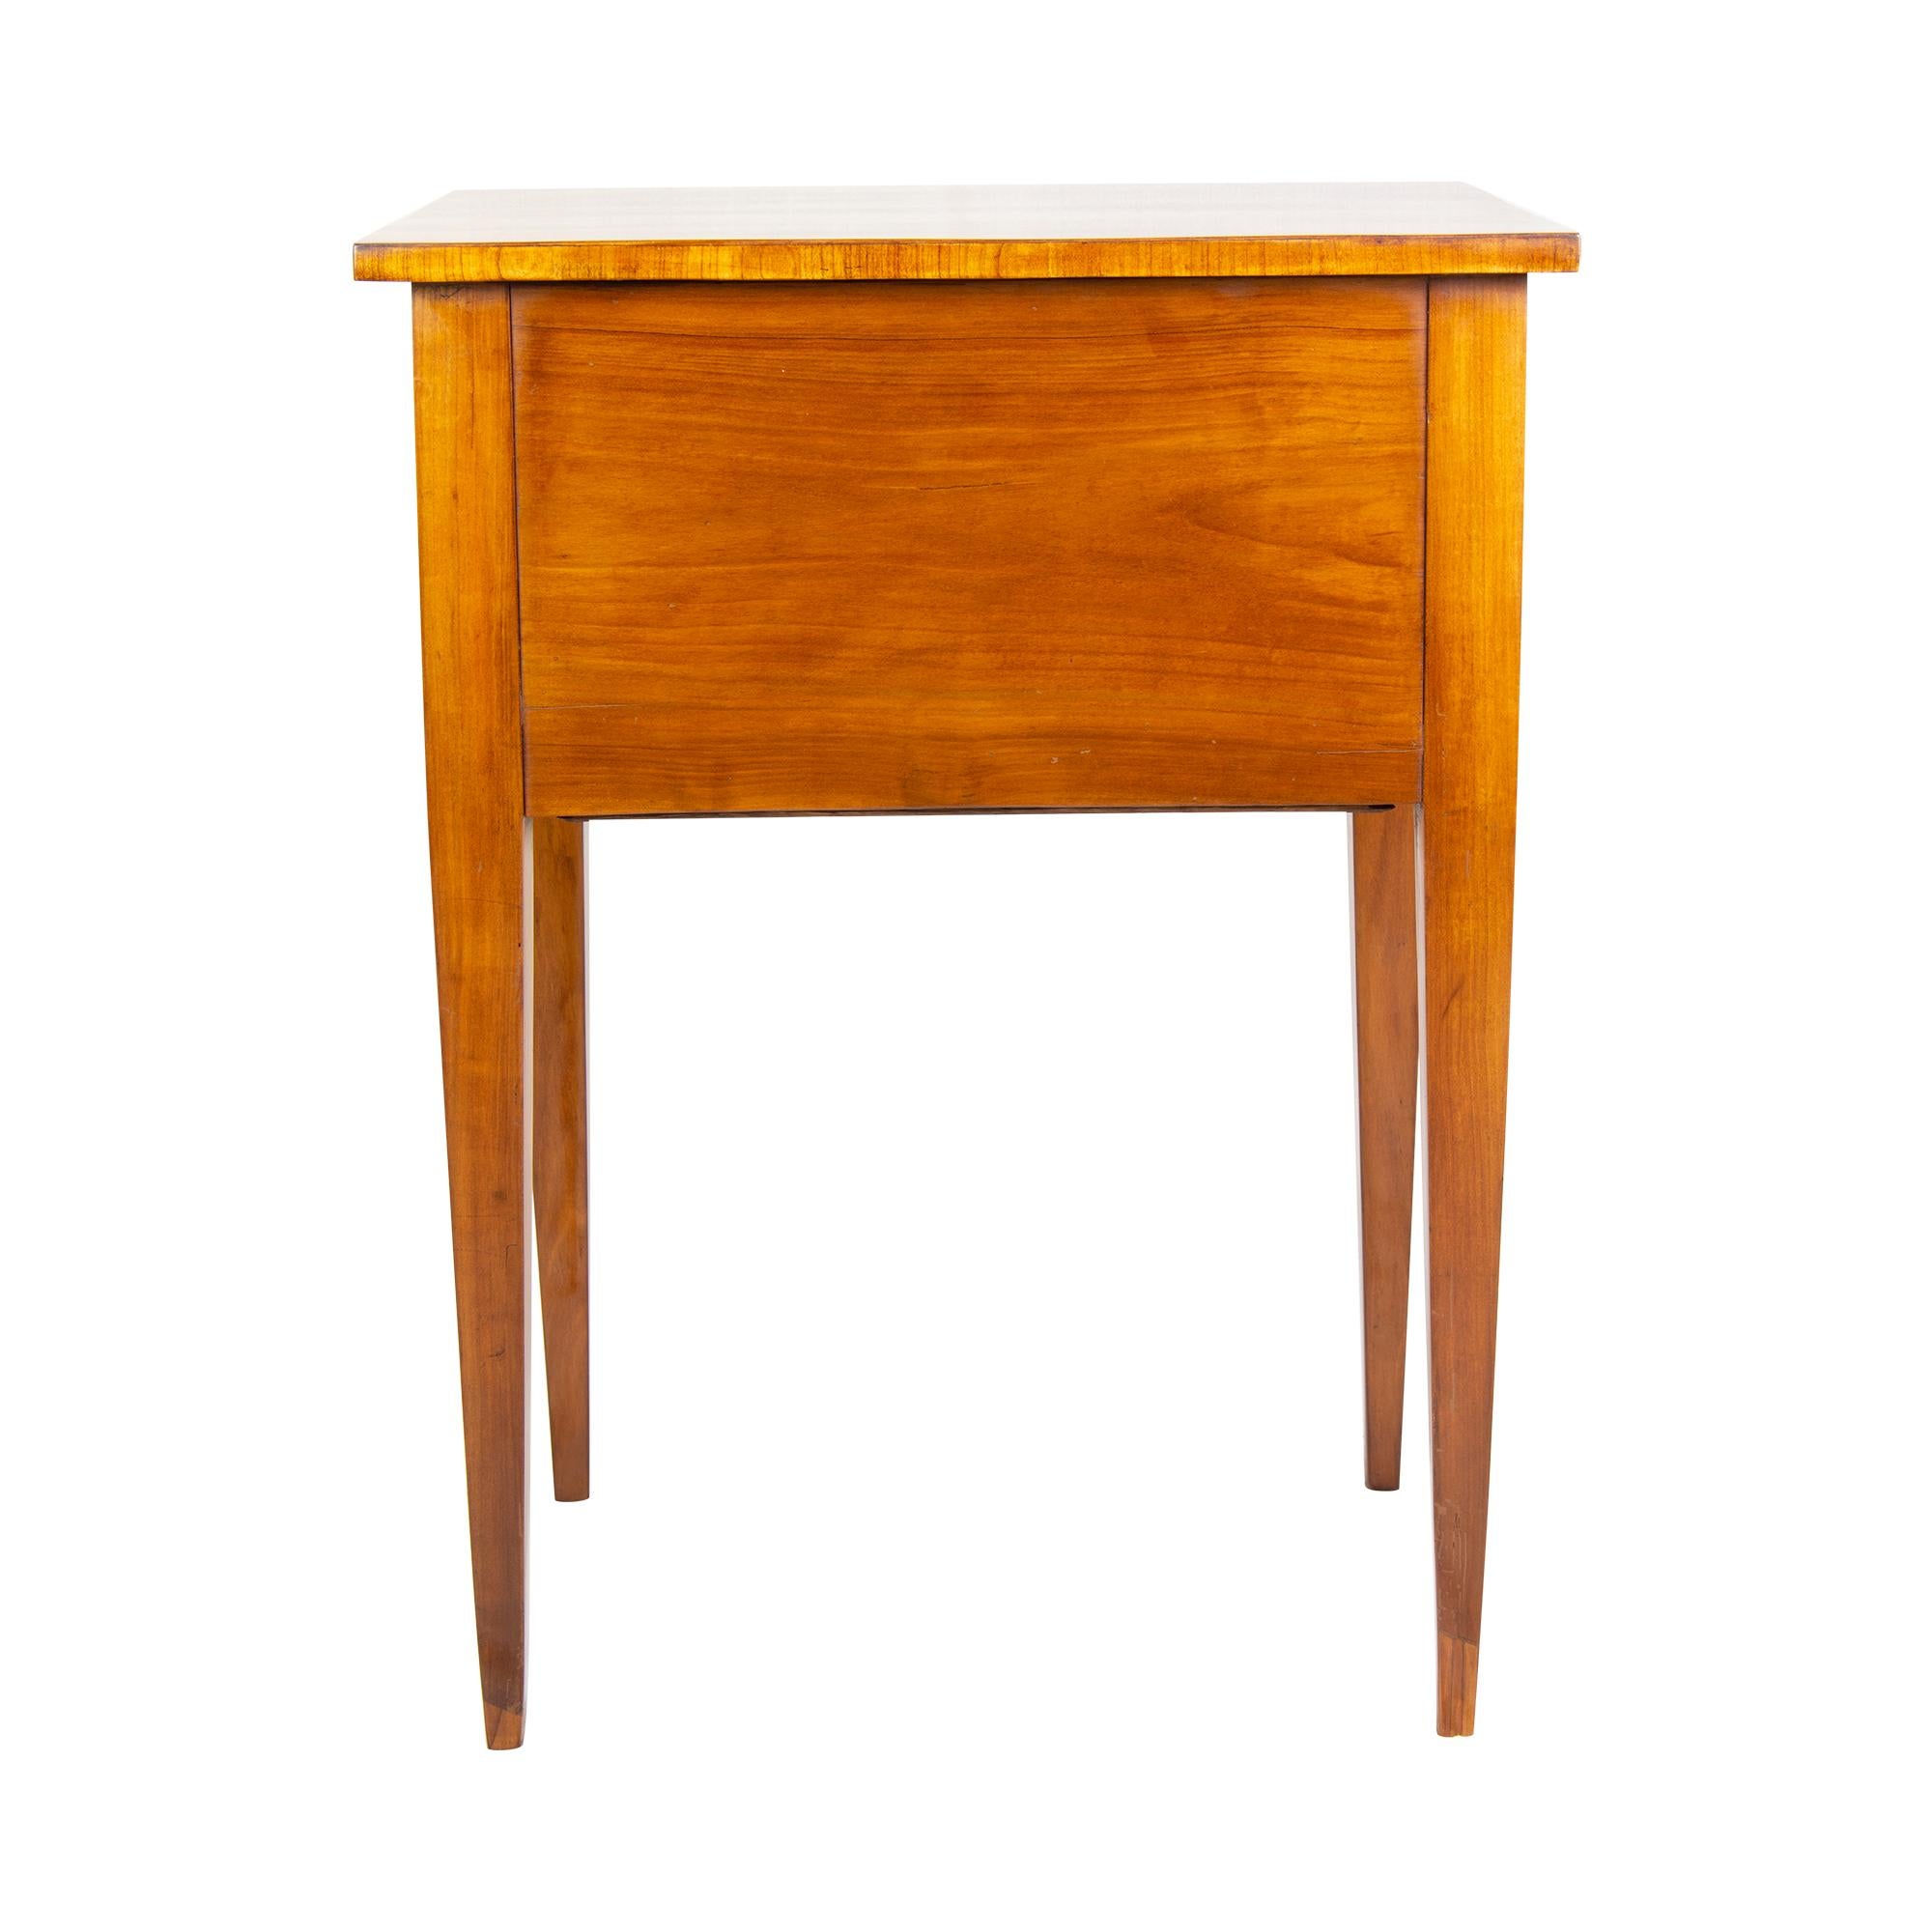 German 19th Century Biedermeier Cherrywood 2-Drawer Side Table